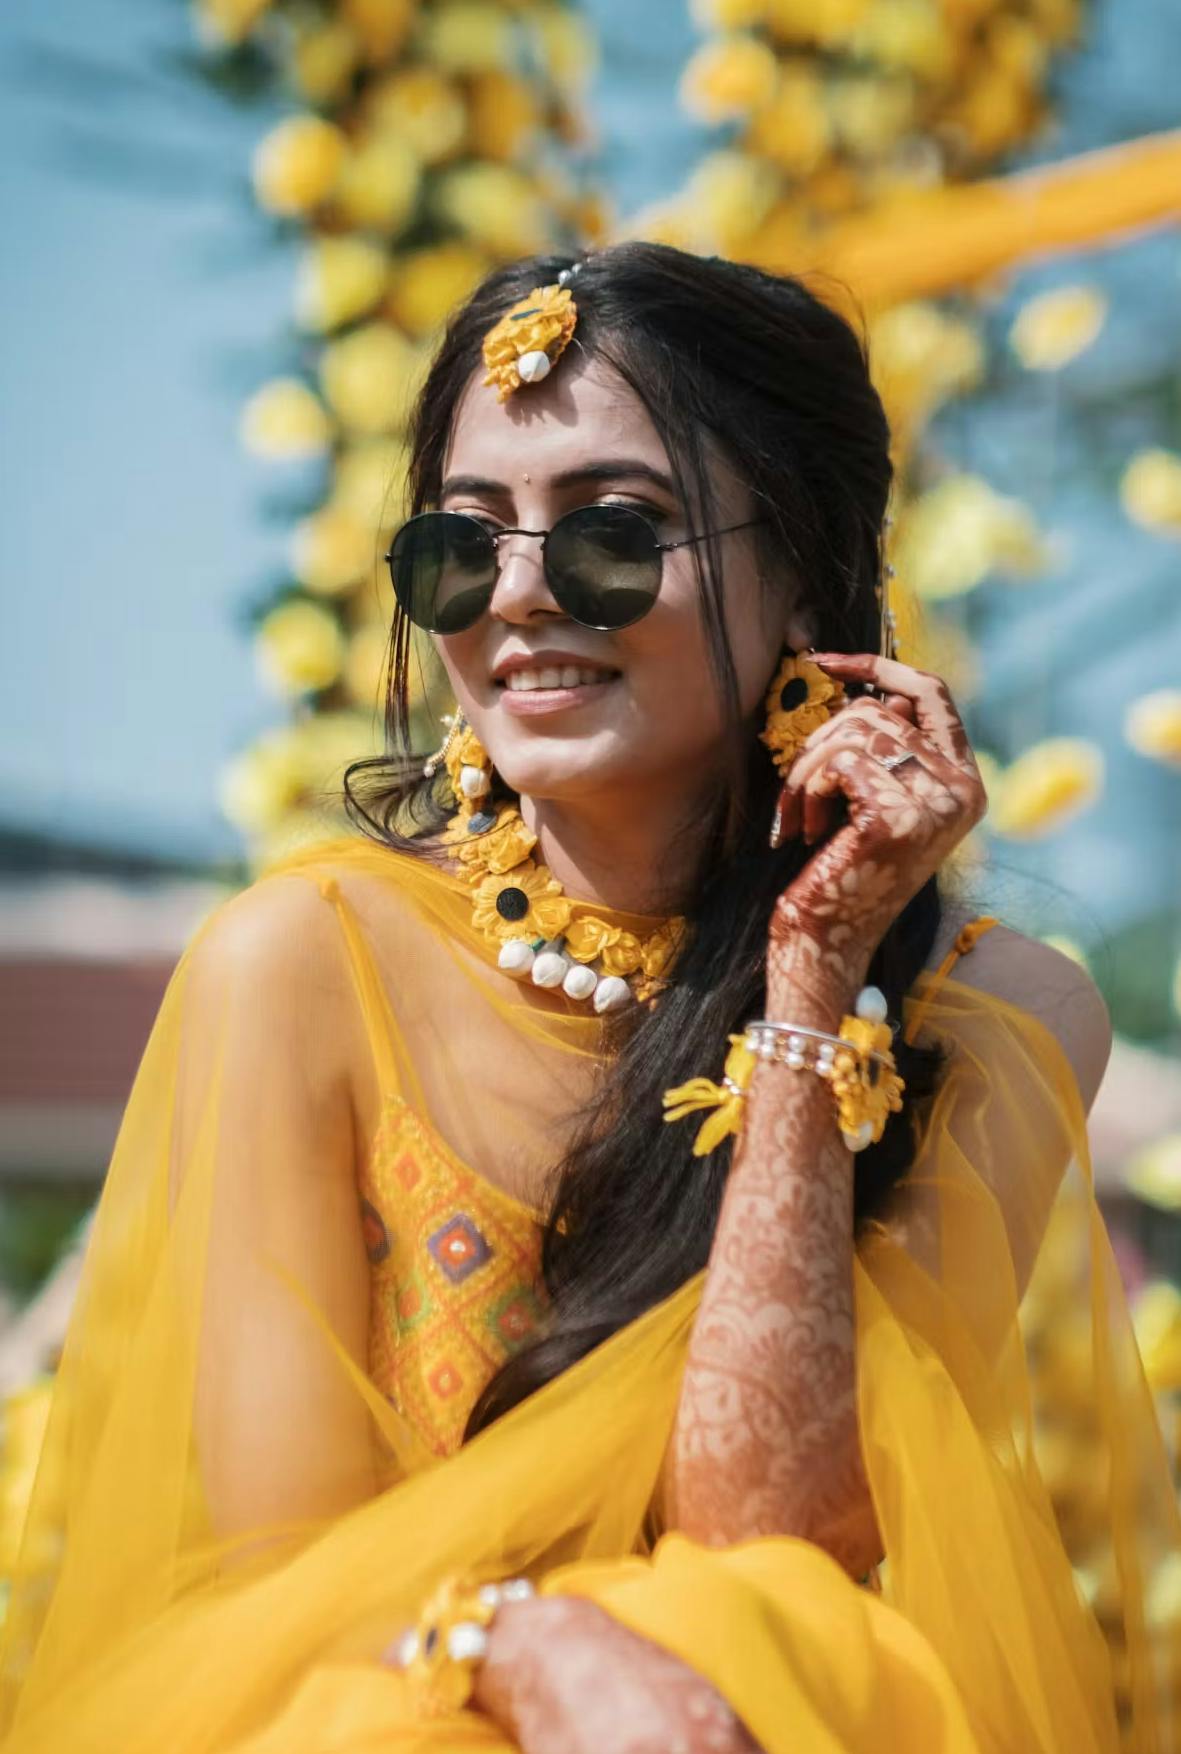 Swagger bride in sunglasses on haldi day